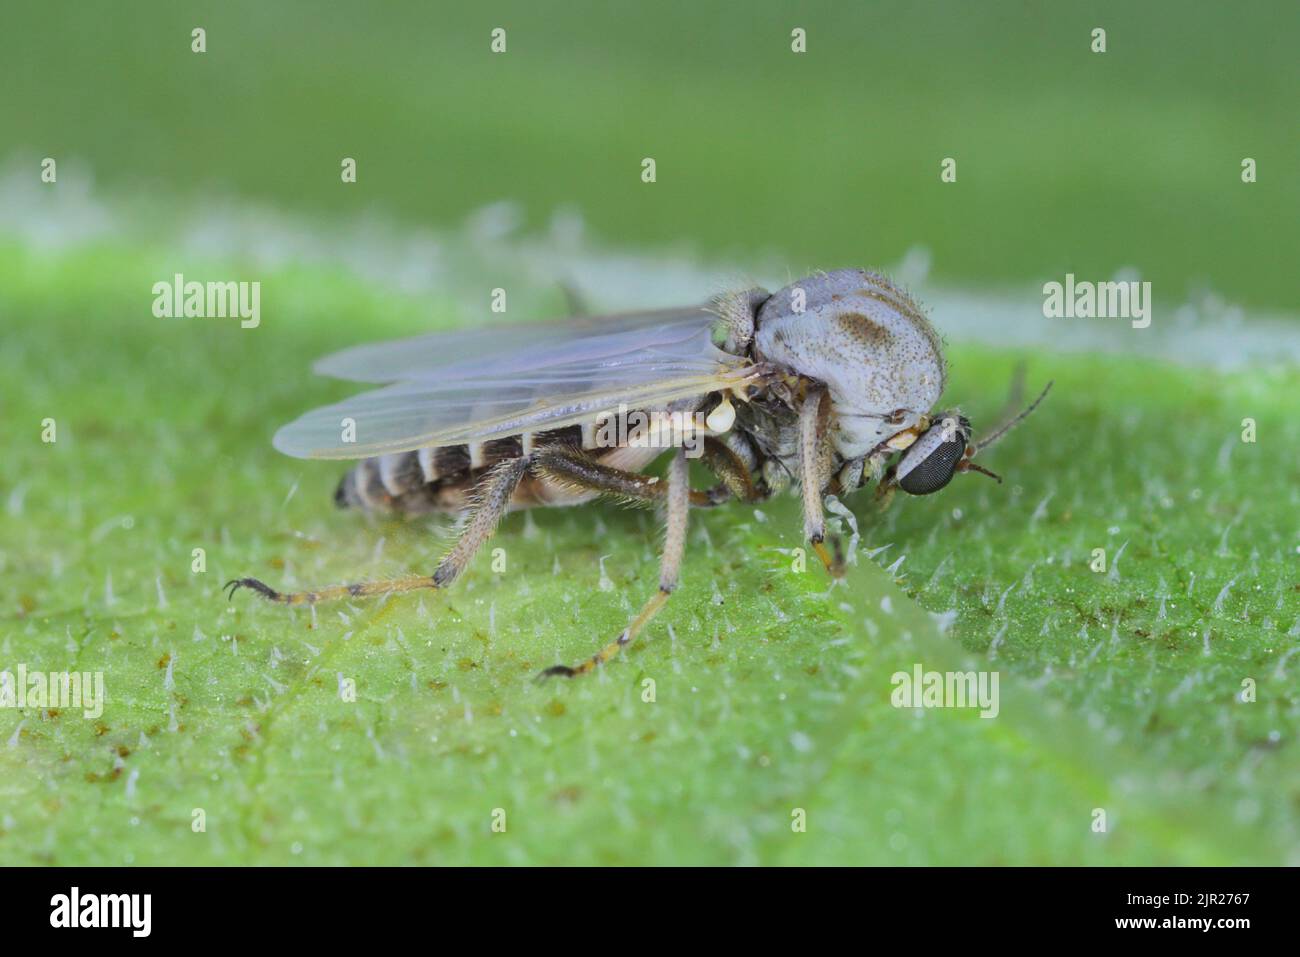 Femmina di flie della famiglia Chironomidae (nota informalmente come chironomidi, ostetriche non morenti, o mosche lacustri). Foto Stock